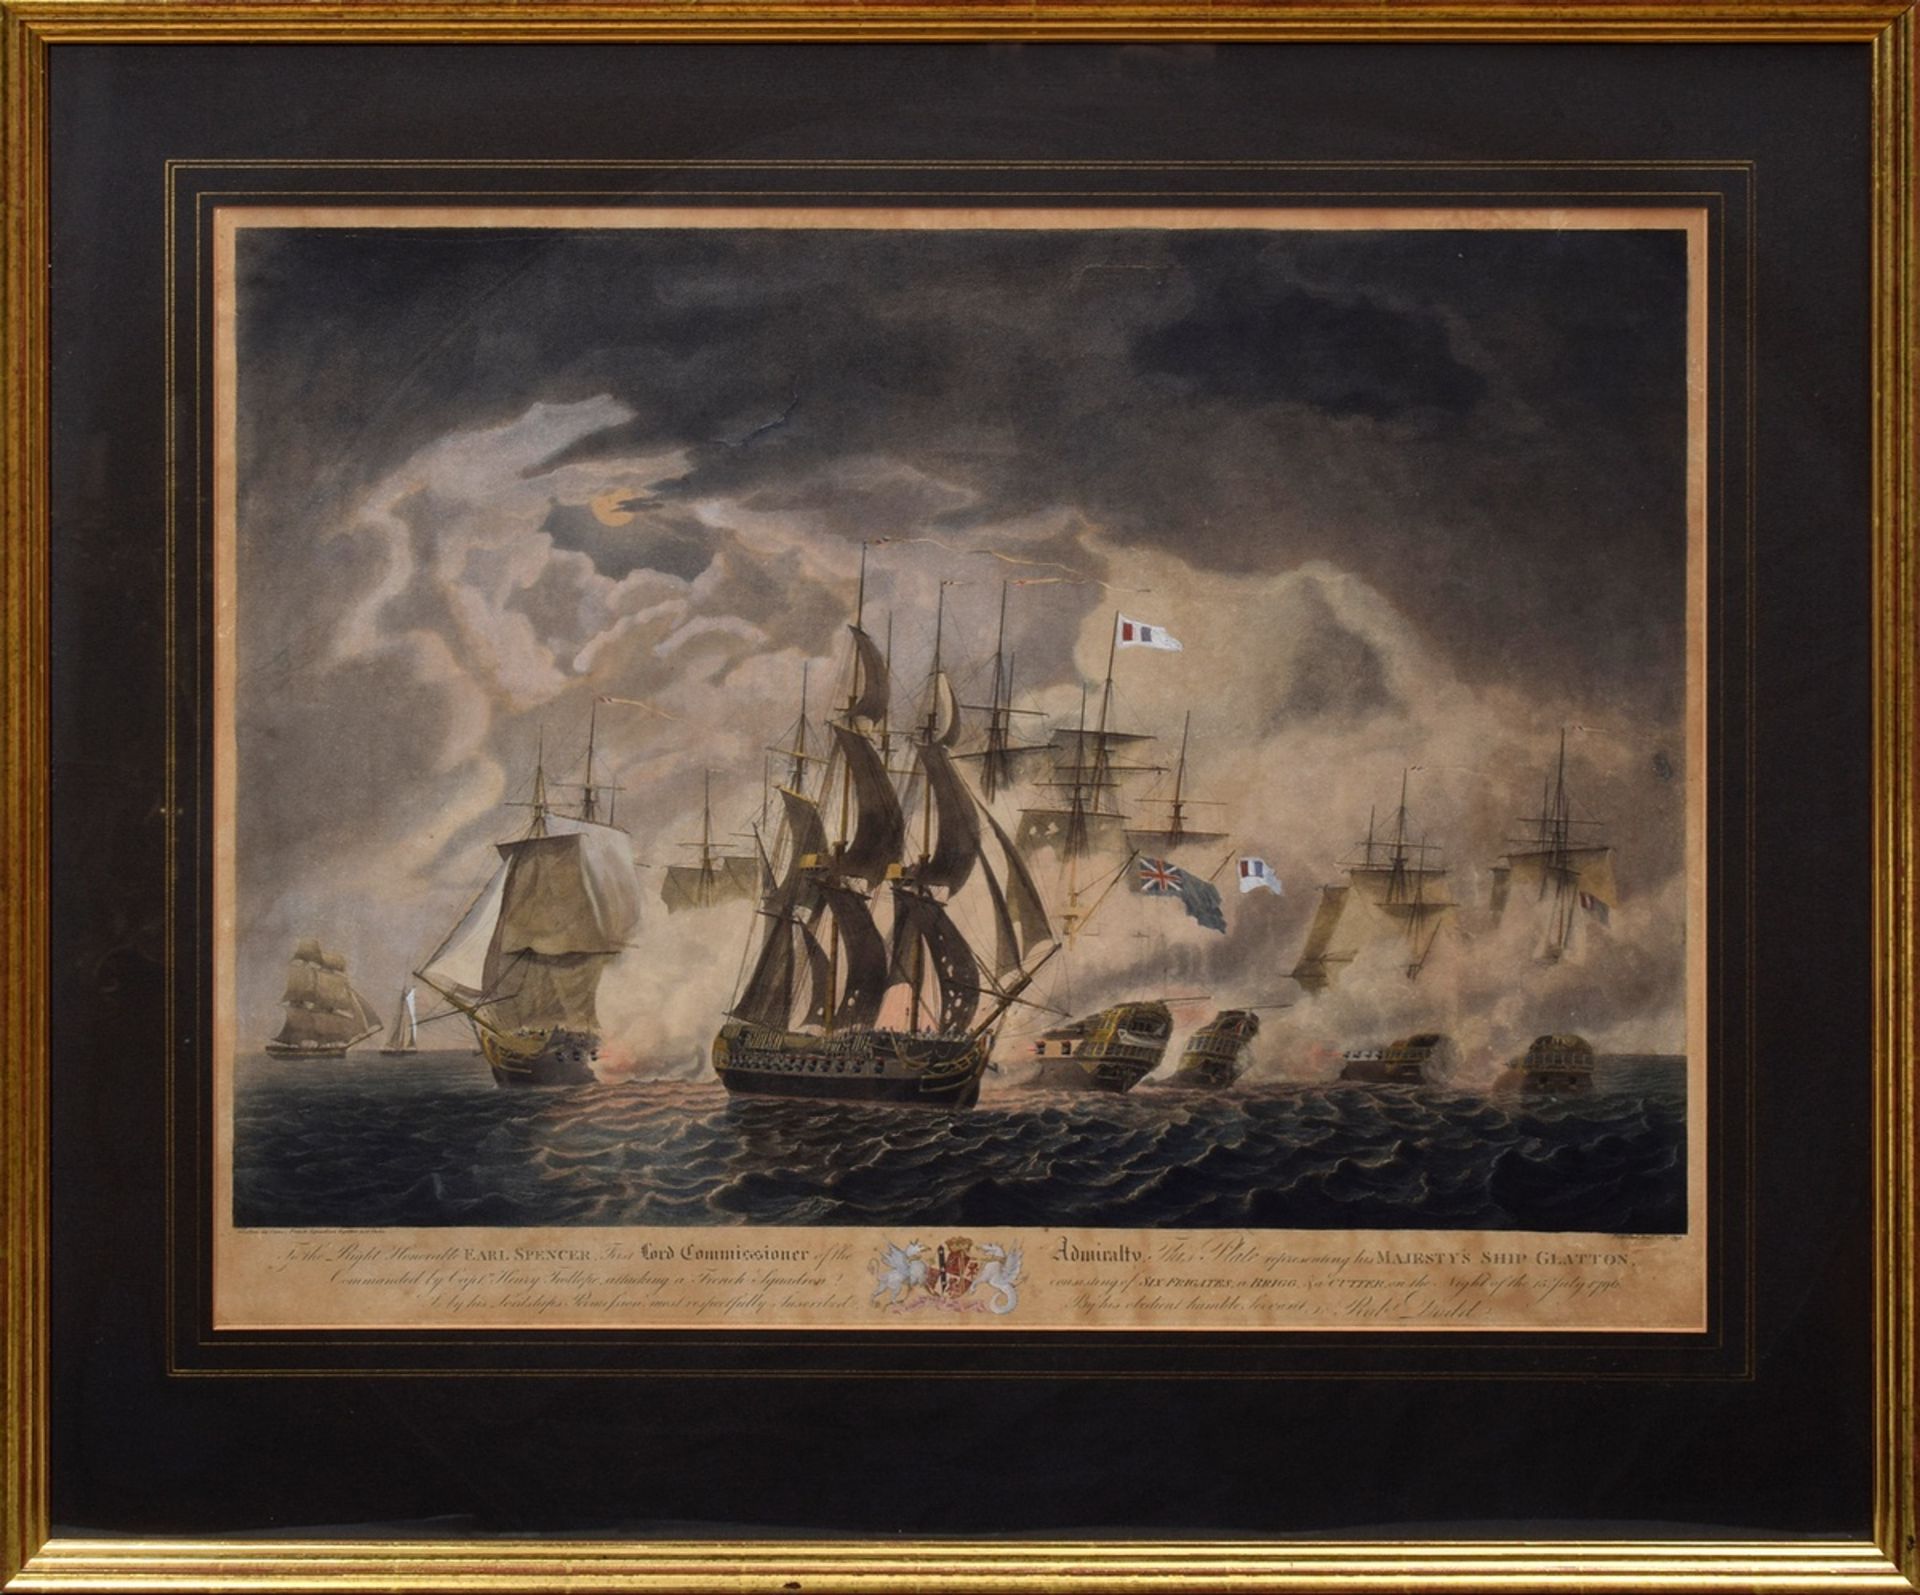 2 Dodd, Robert (1748-1816) "Seeschlachten des Schiffs Glatton" 1796, colorierte Aquatinten, weiß ge - Bild 7 aus 10